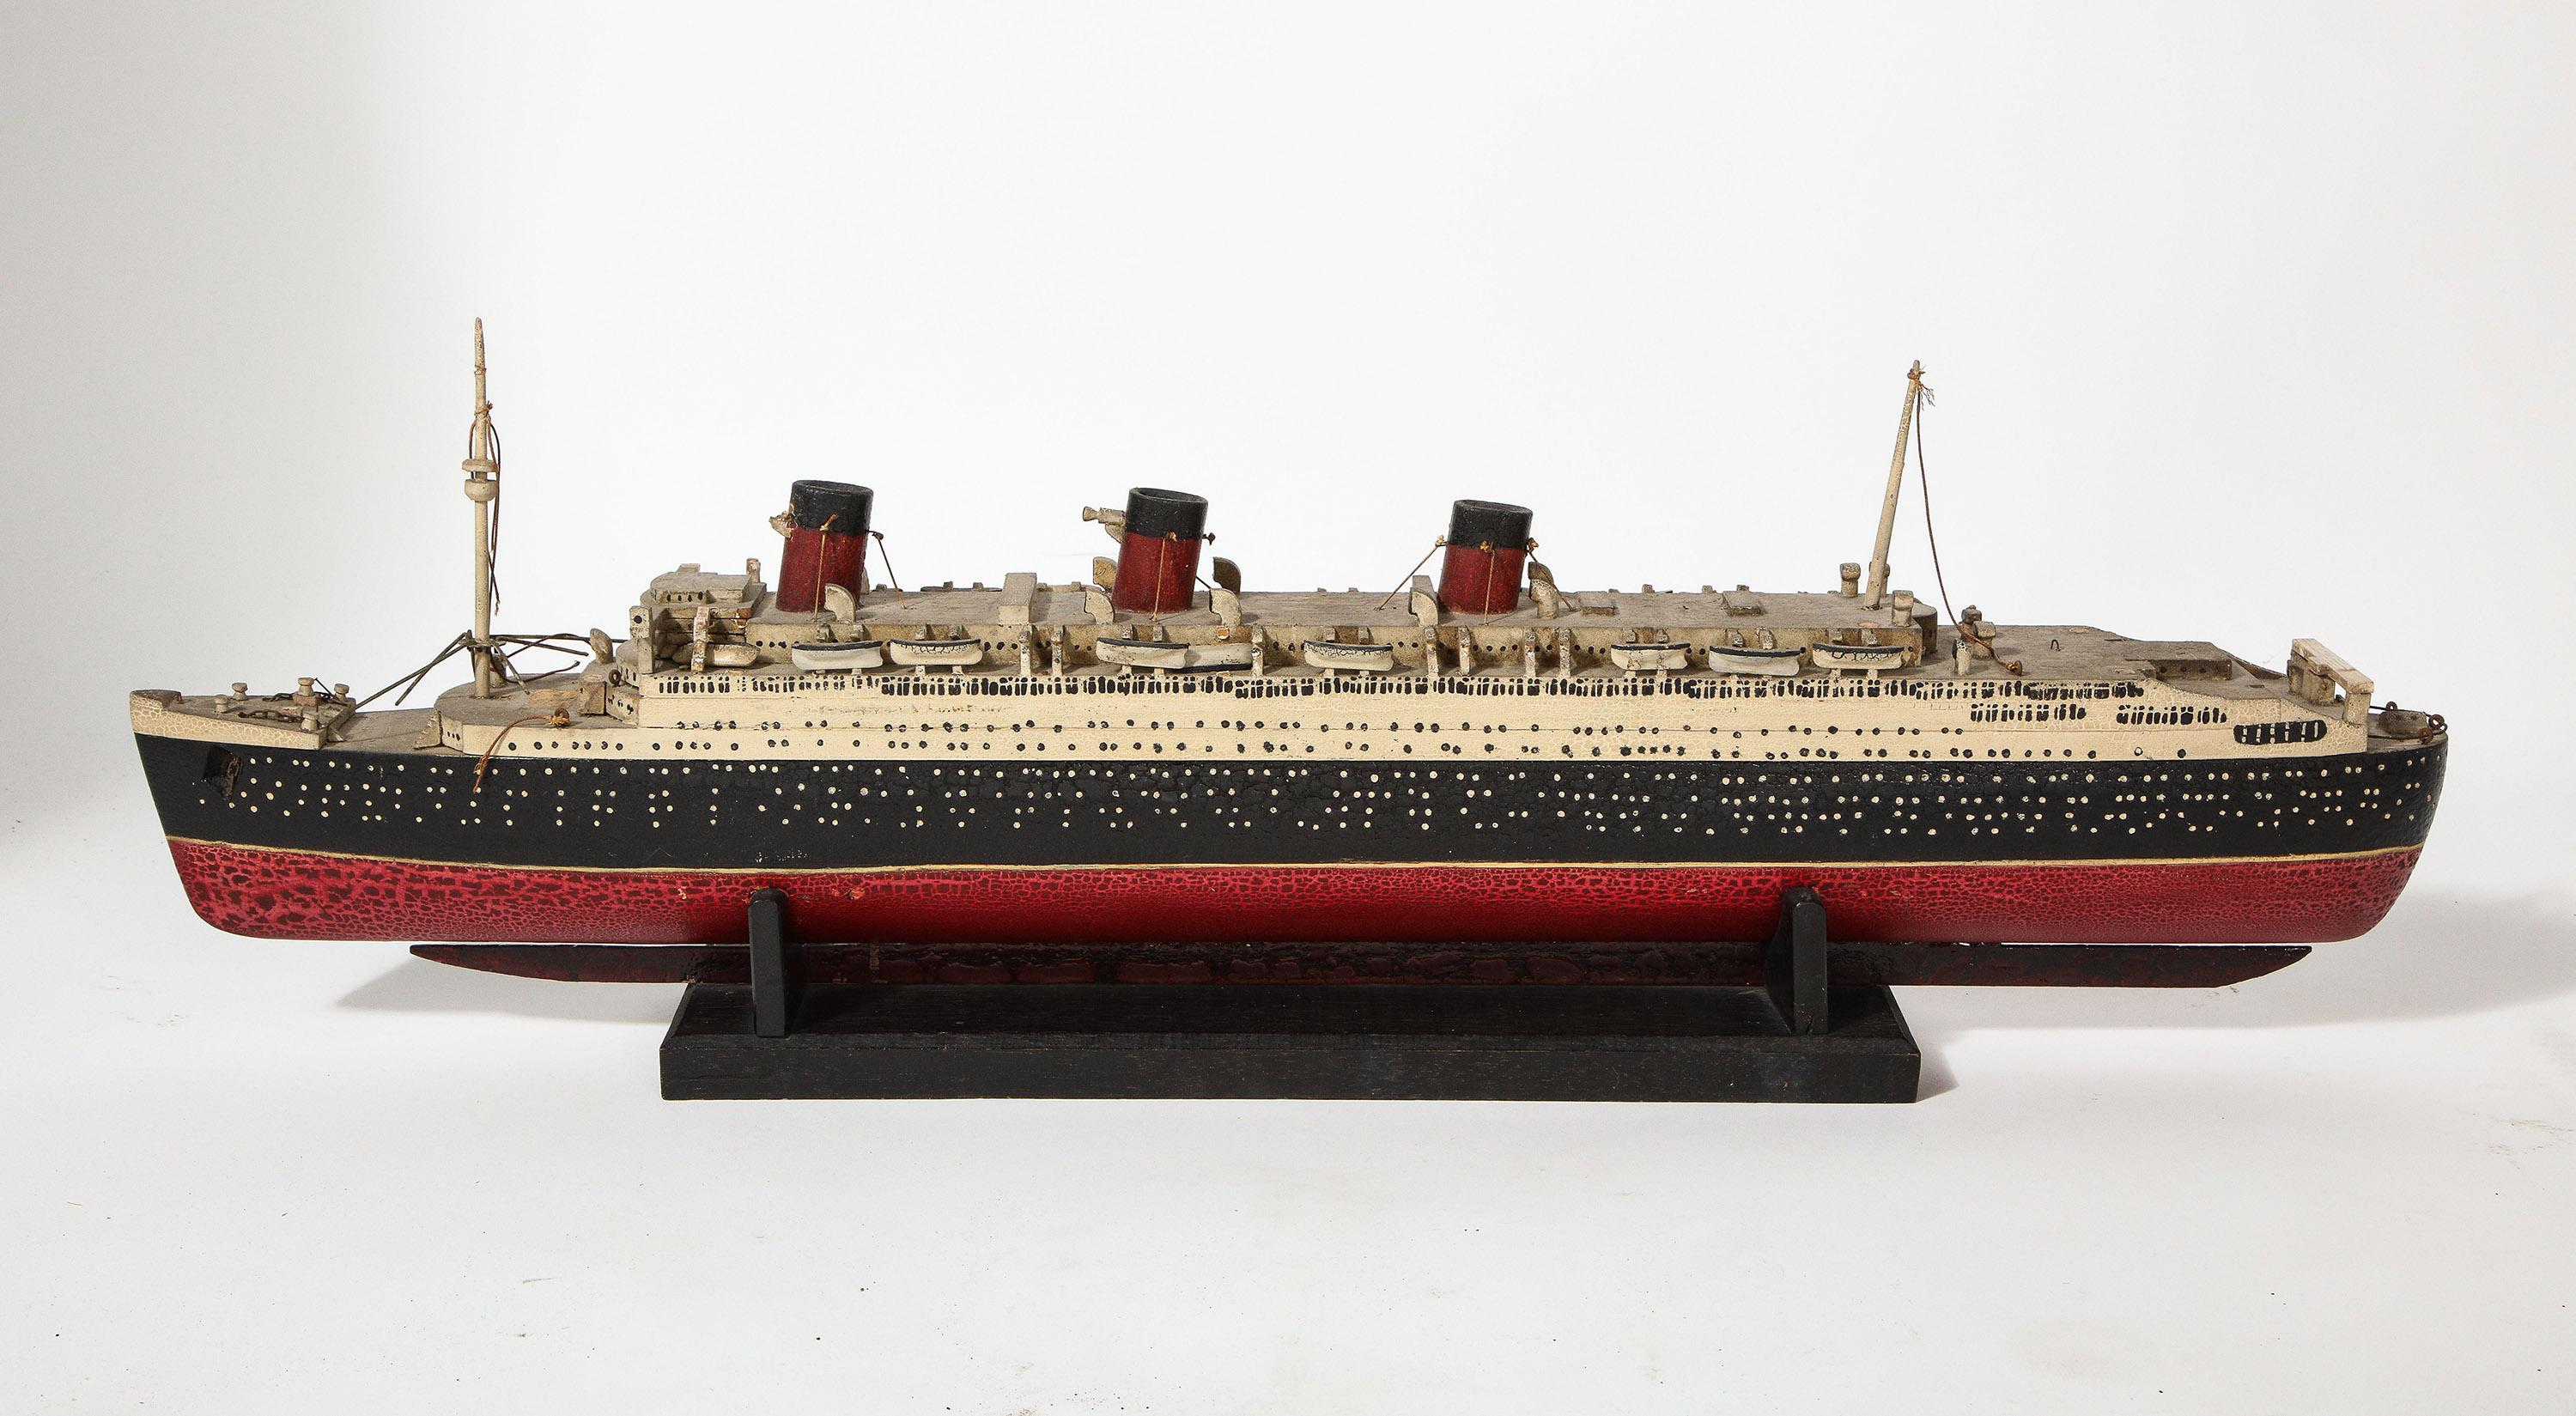 Une maquette ancienne (probablement à la fin des années 1930) du RMS Queen Mary, entièrement sculptée et peinte à la main dans les moindres détails. L'état est assez bon avec une patine d'origine intacte.